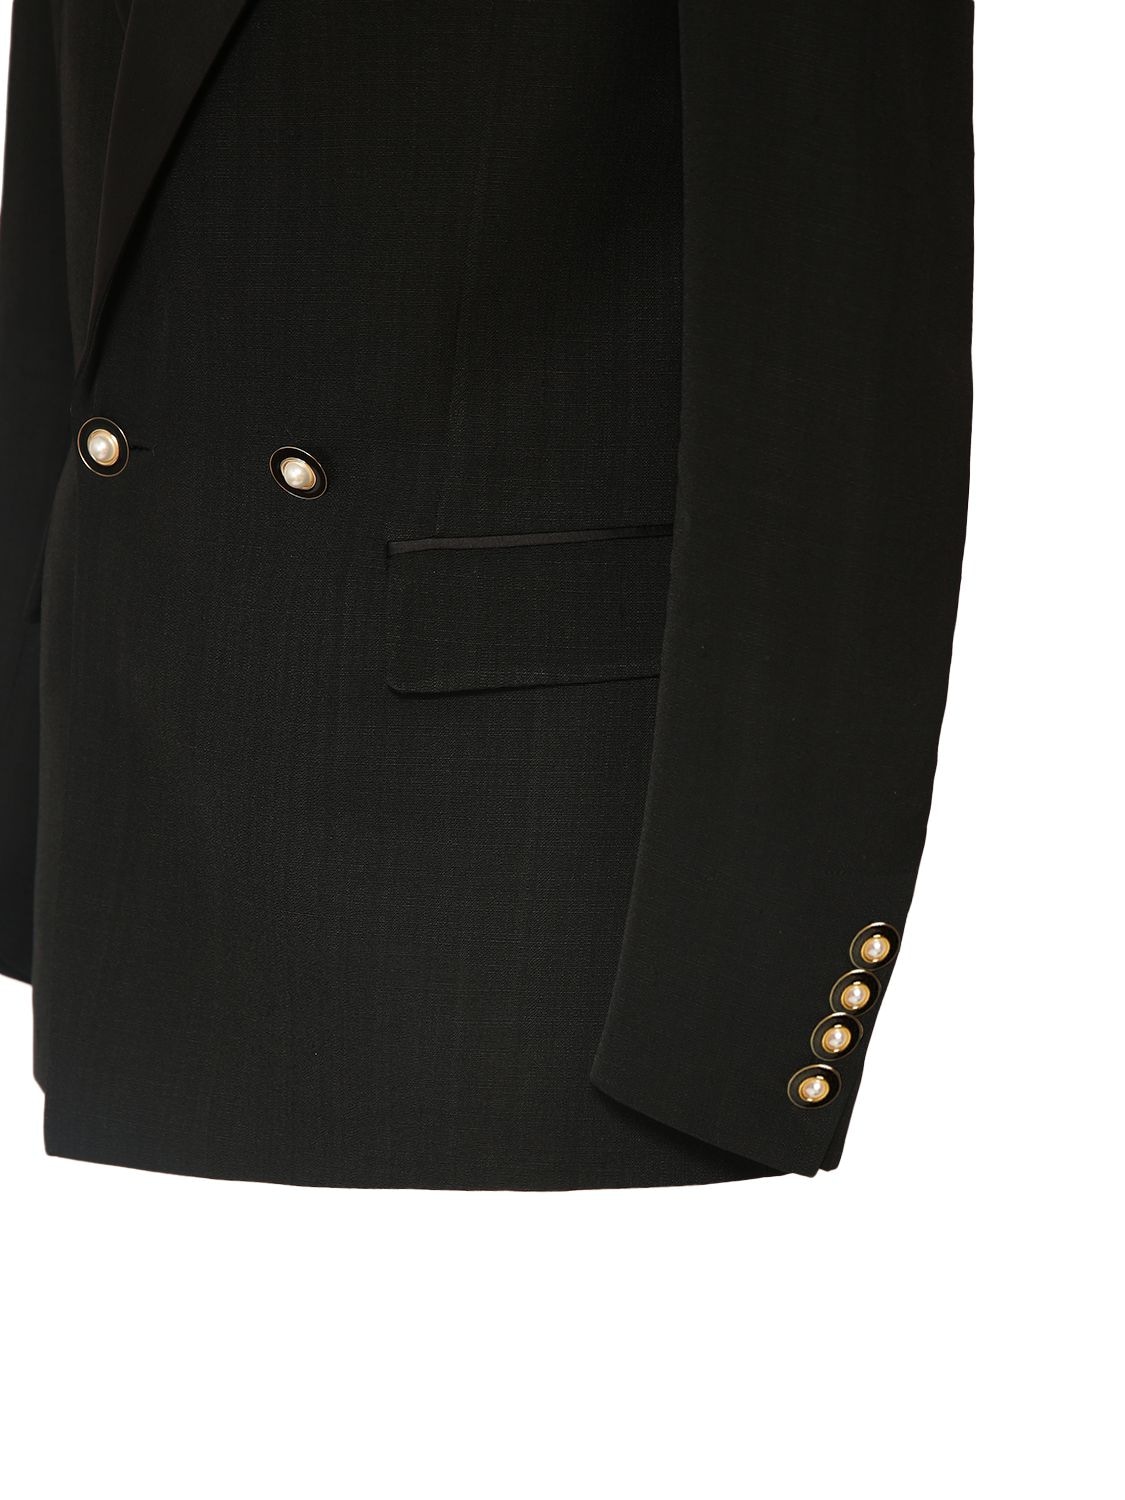 Shop Casablanca Viscose & Silk Tuxedo Jacket In Black